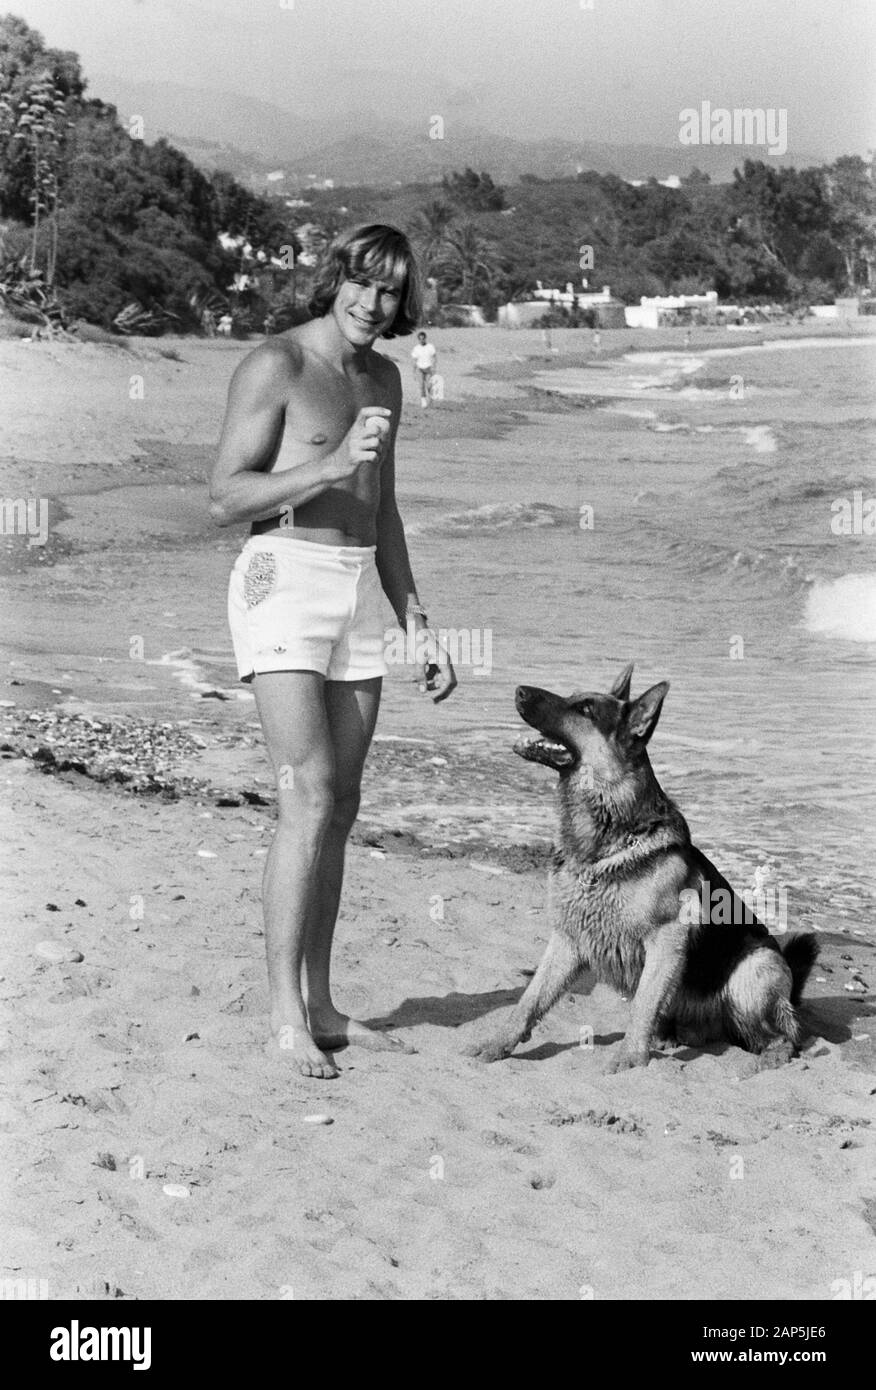 James Hunt, britischer, Autorennfahrer mit seinem Hund am Strand, um 1974. La course de voiture pilote James Hunt avec son chien sur la plage, autour de 1974. Banque D'Images